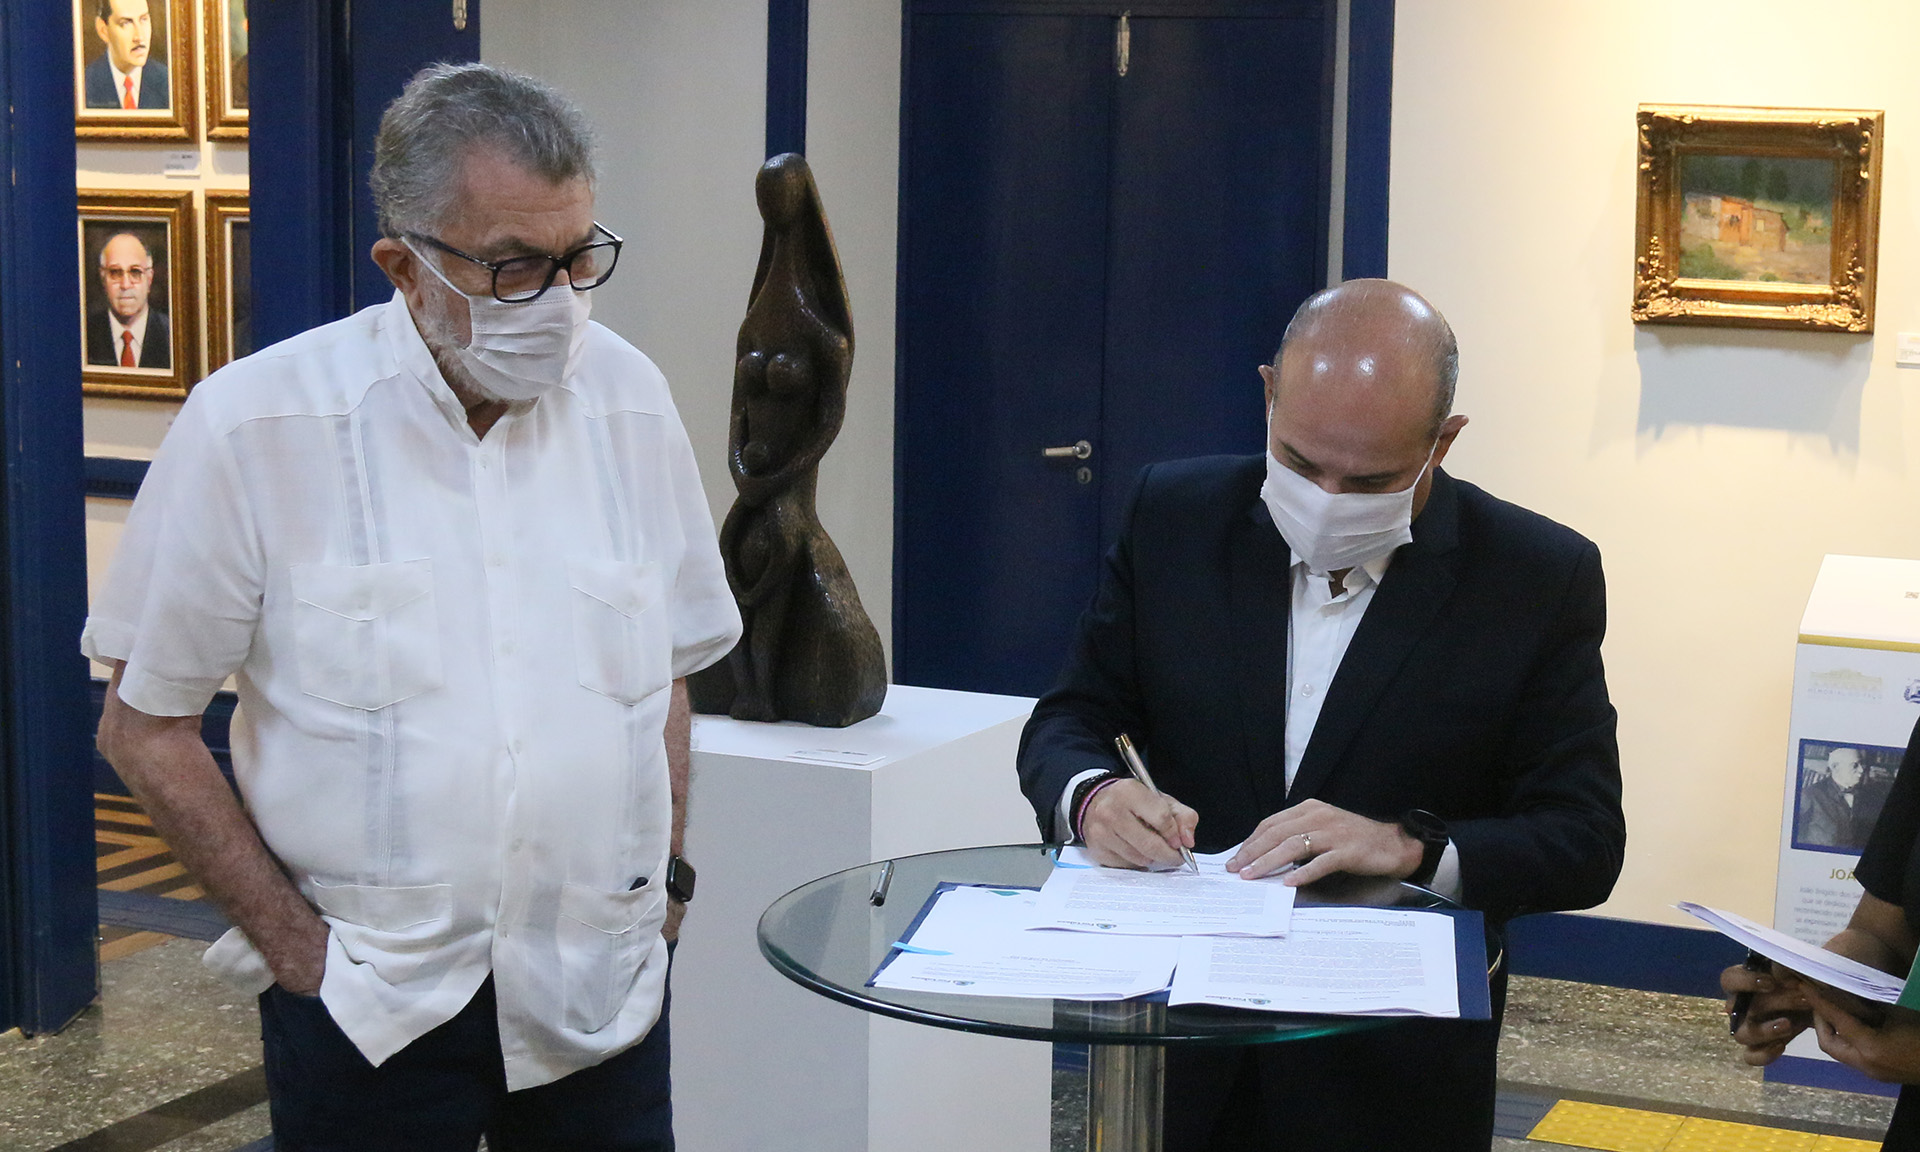 Eudoro Santana ao lado do prefeito, que assina um documento em cima de uma mesa